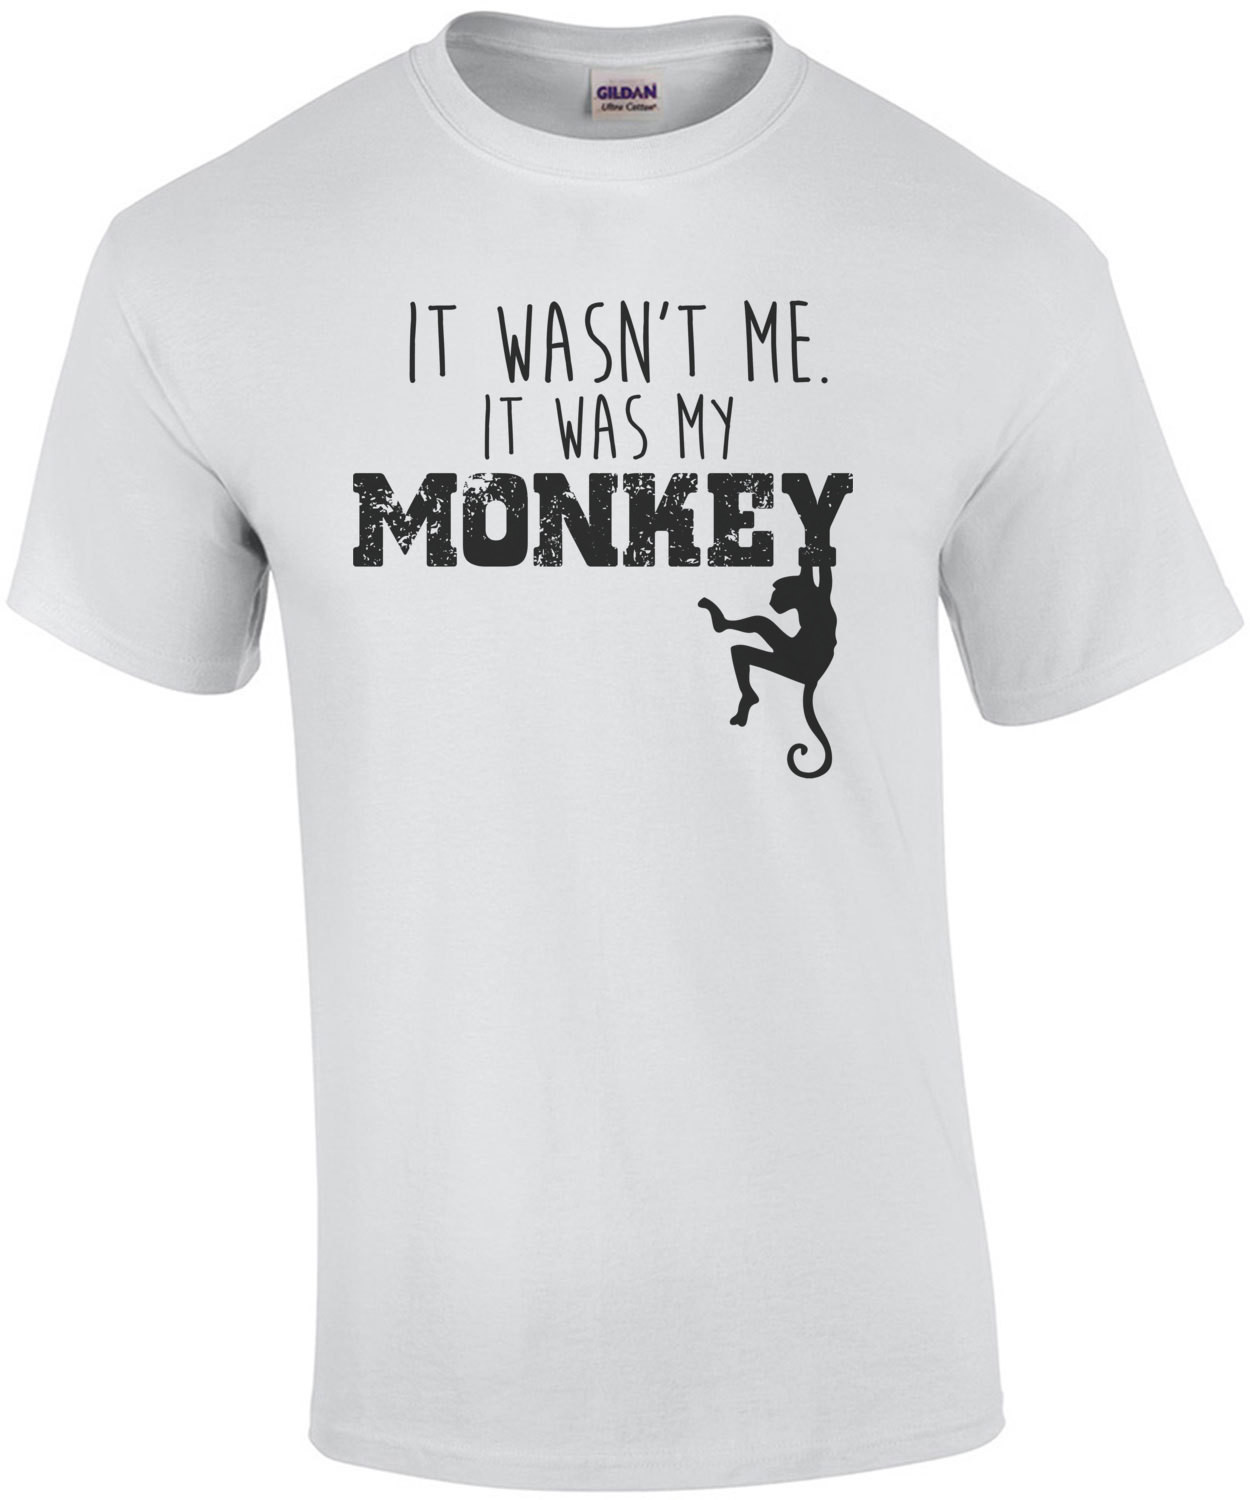 It wasn't me. It was my monkey. Funny T-Shirt